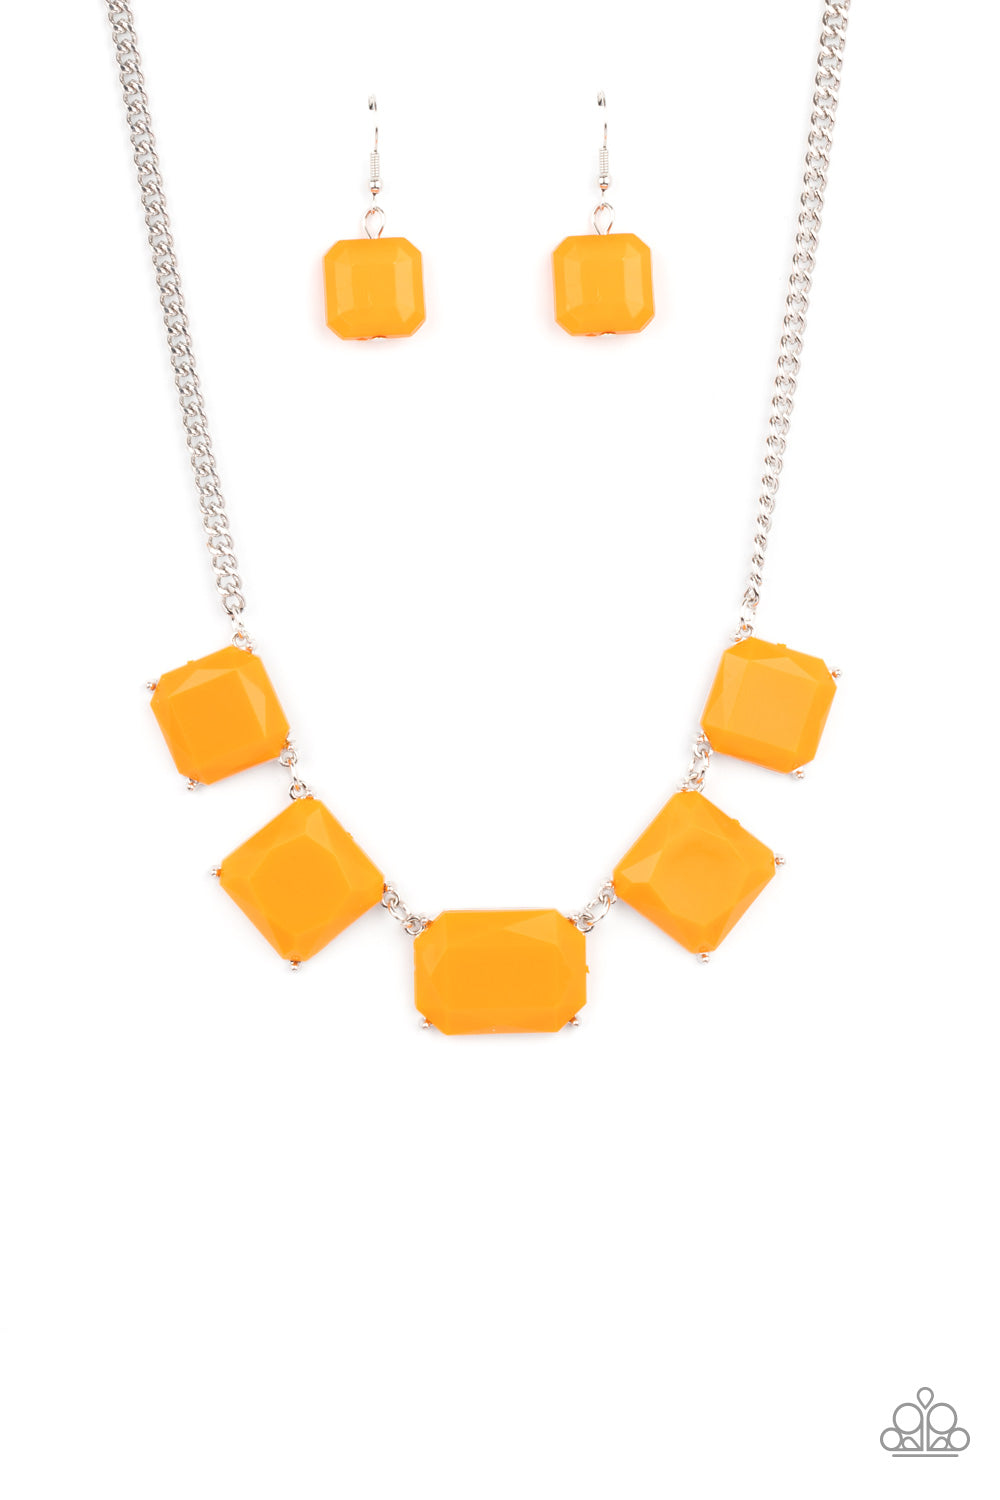 Instant Mood Booster - Orange necklace 1569